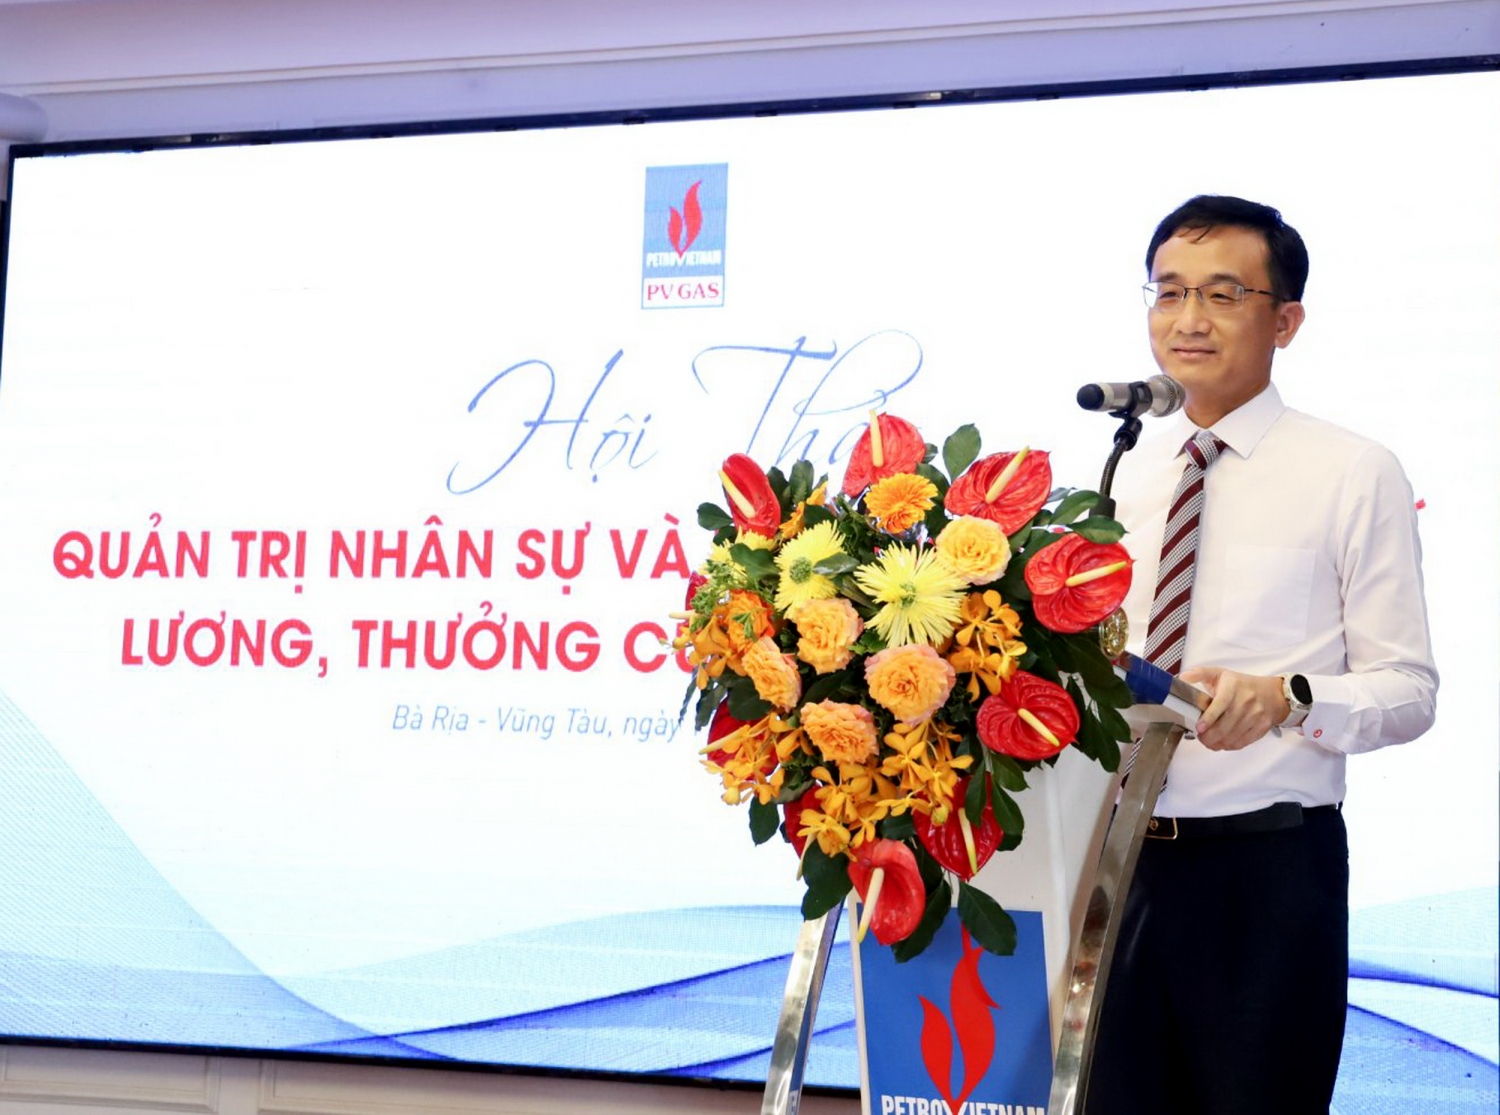 ông Trần Nhật Huy – Giám đốc KVT về quản trị nhân sự